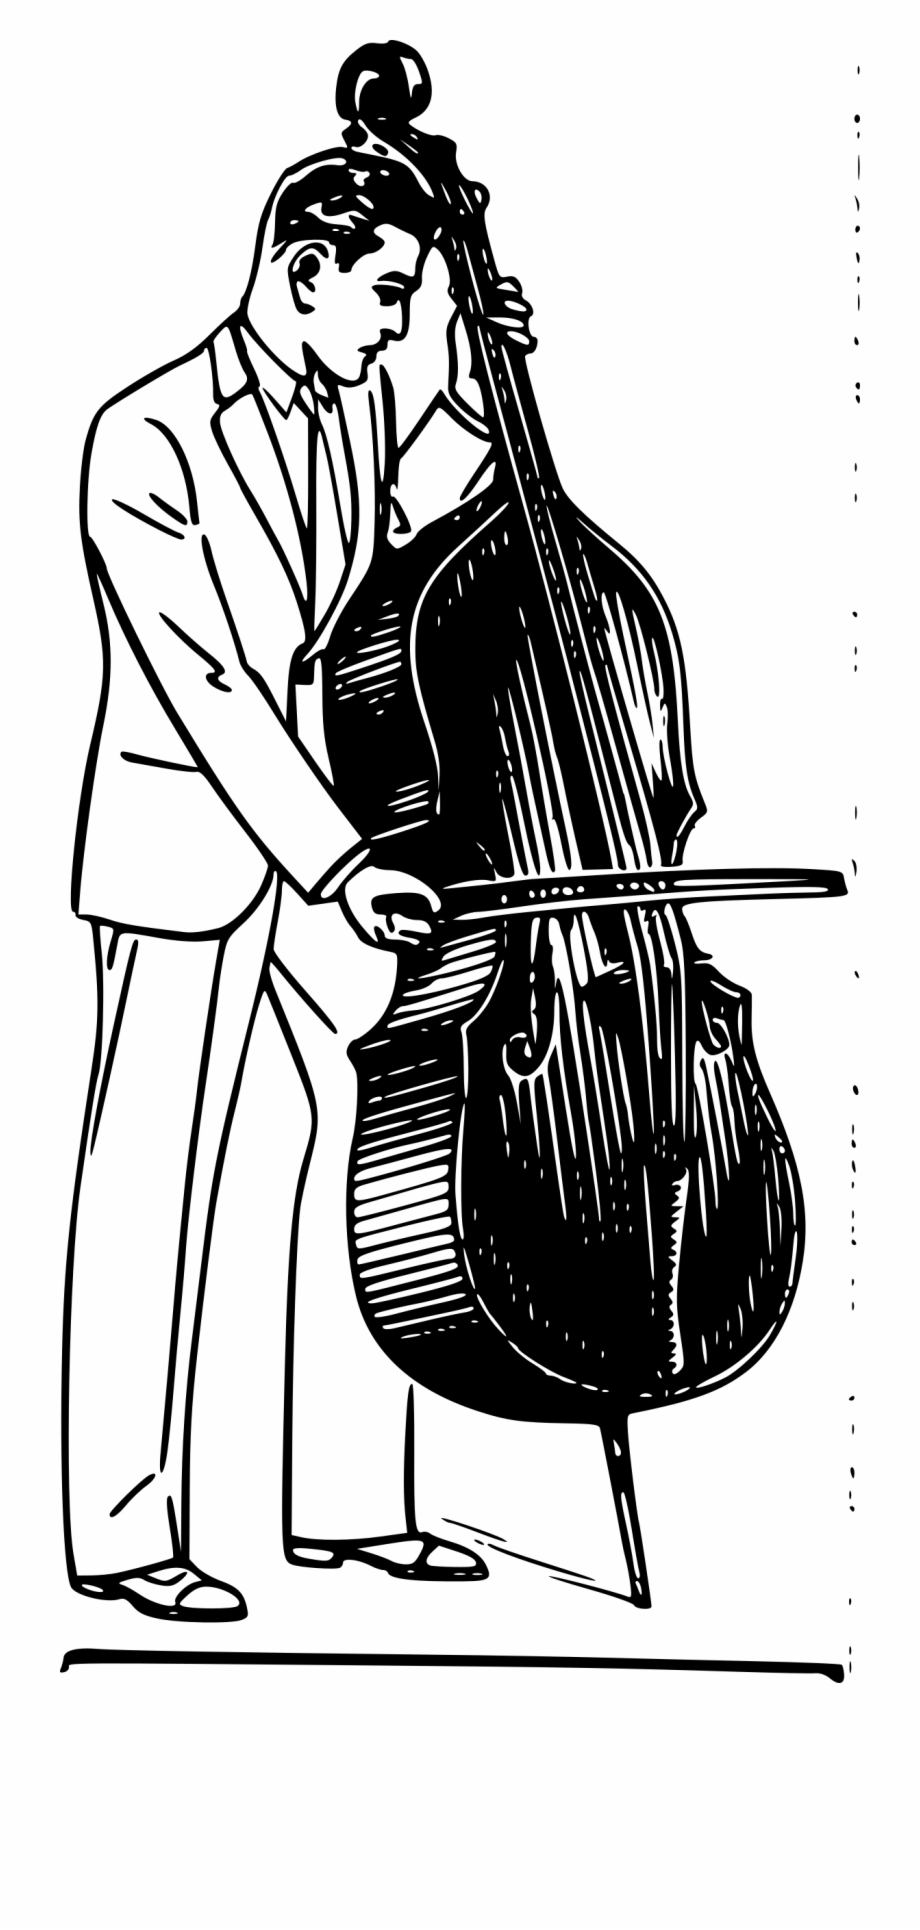 cello clipart double bass